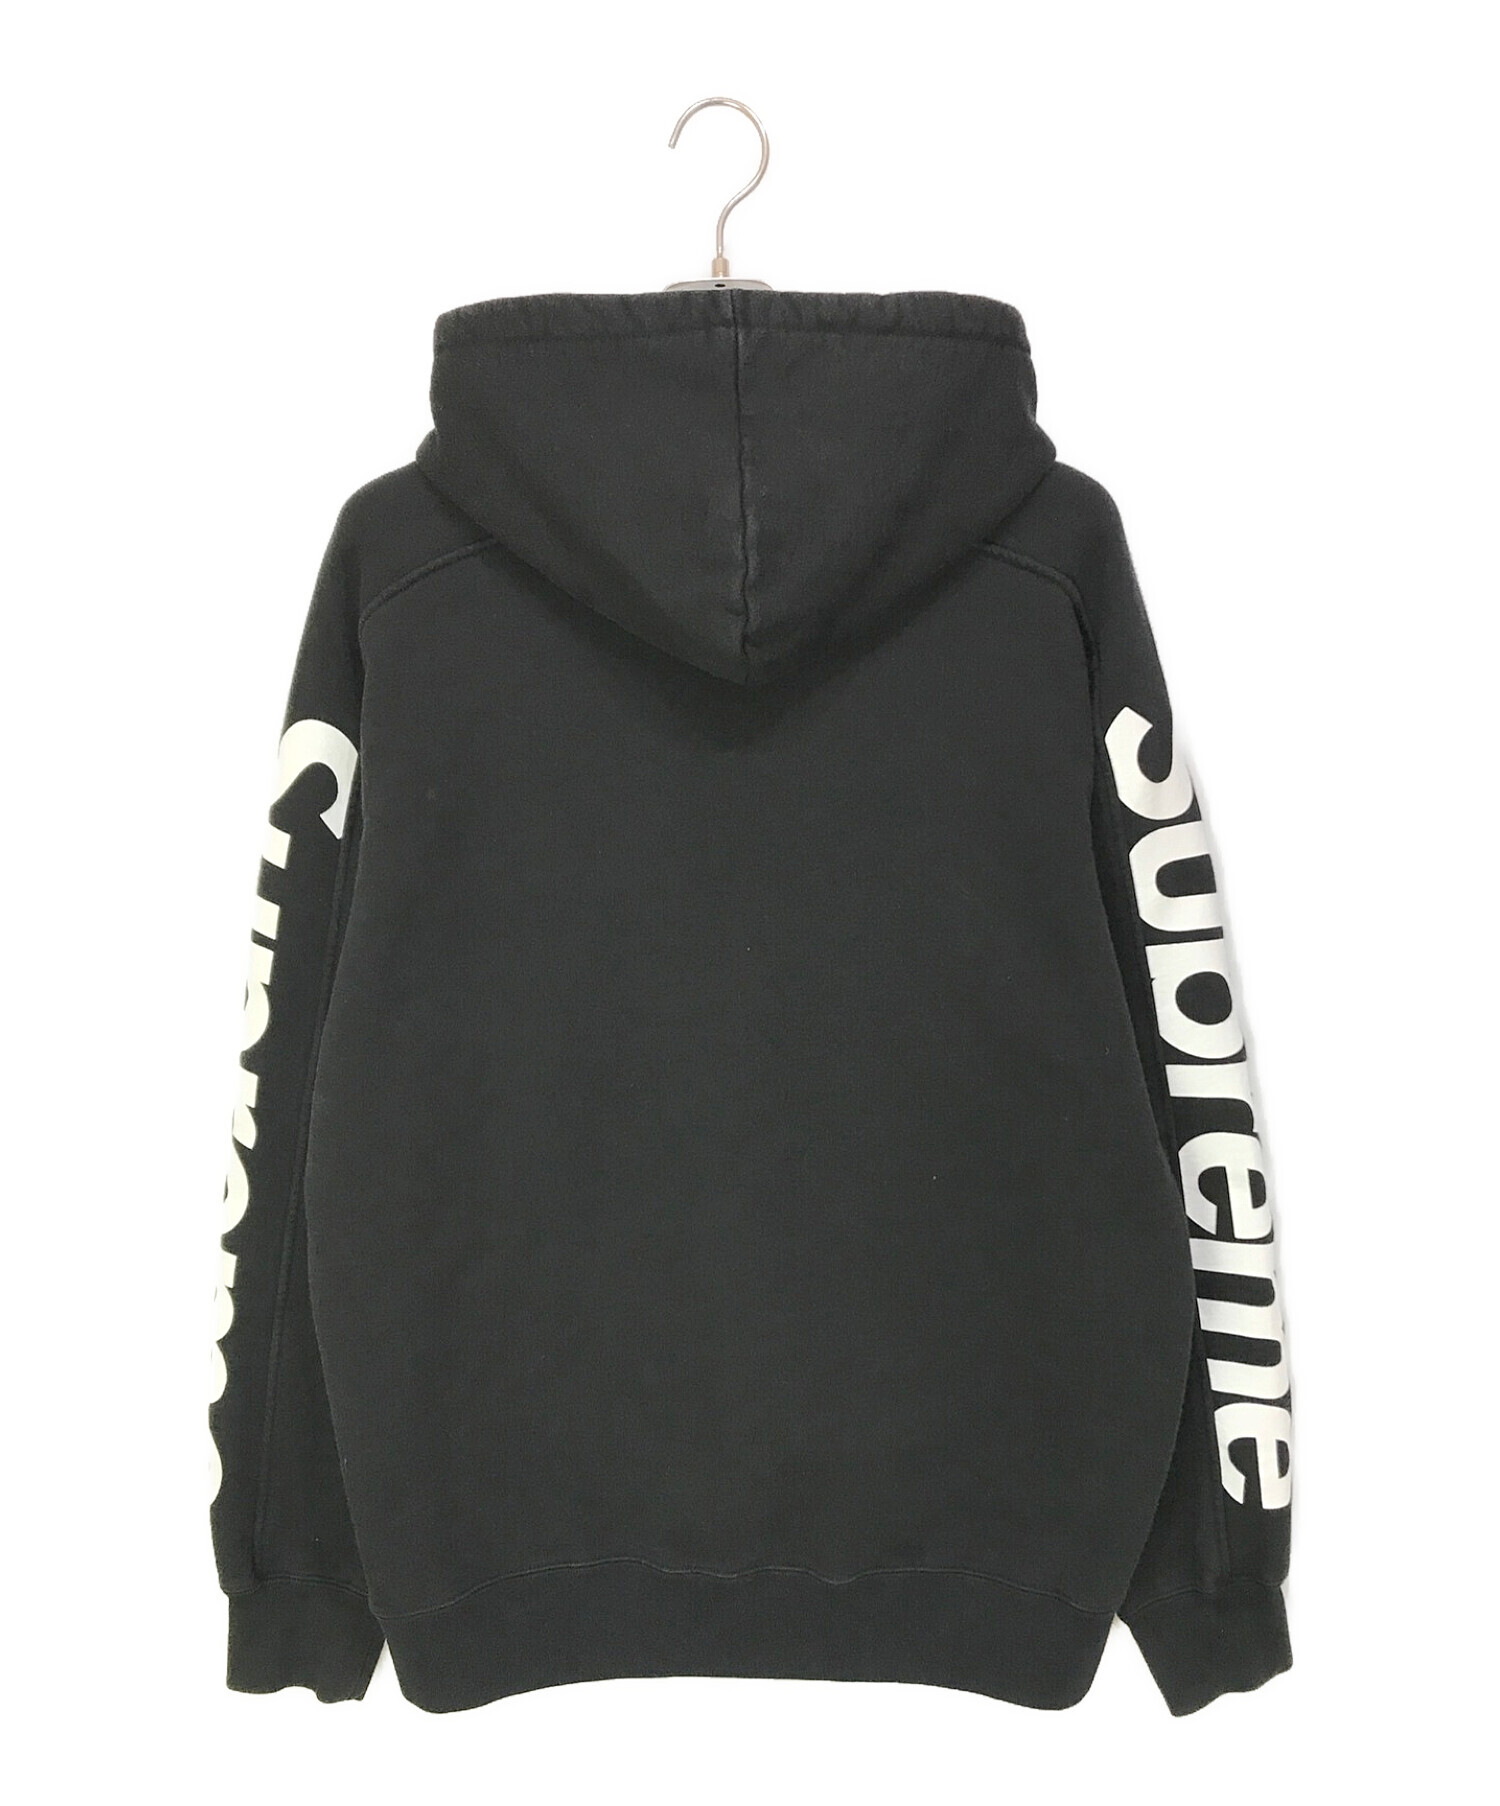 【M】 Supreme Sideline Hooded Sweatshirt